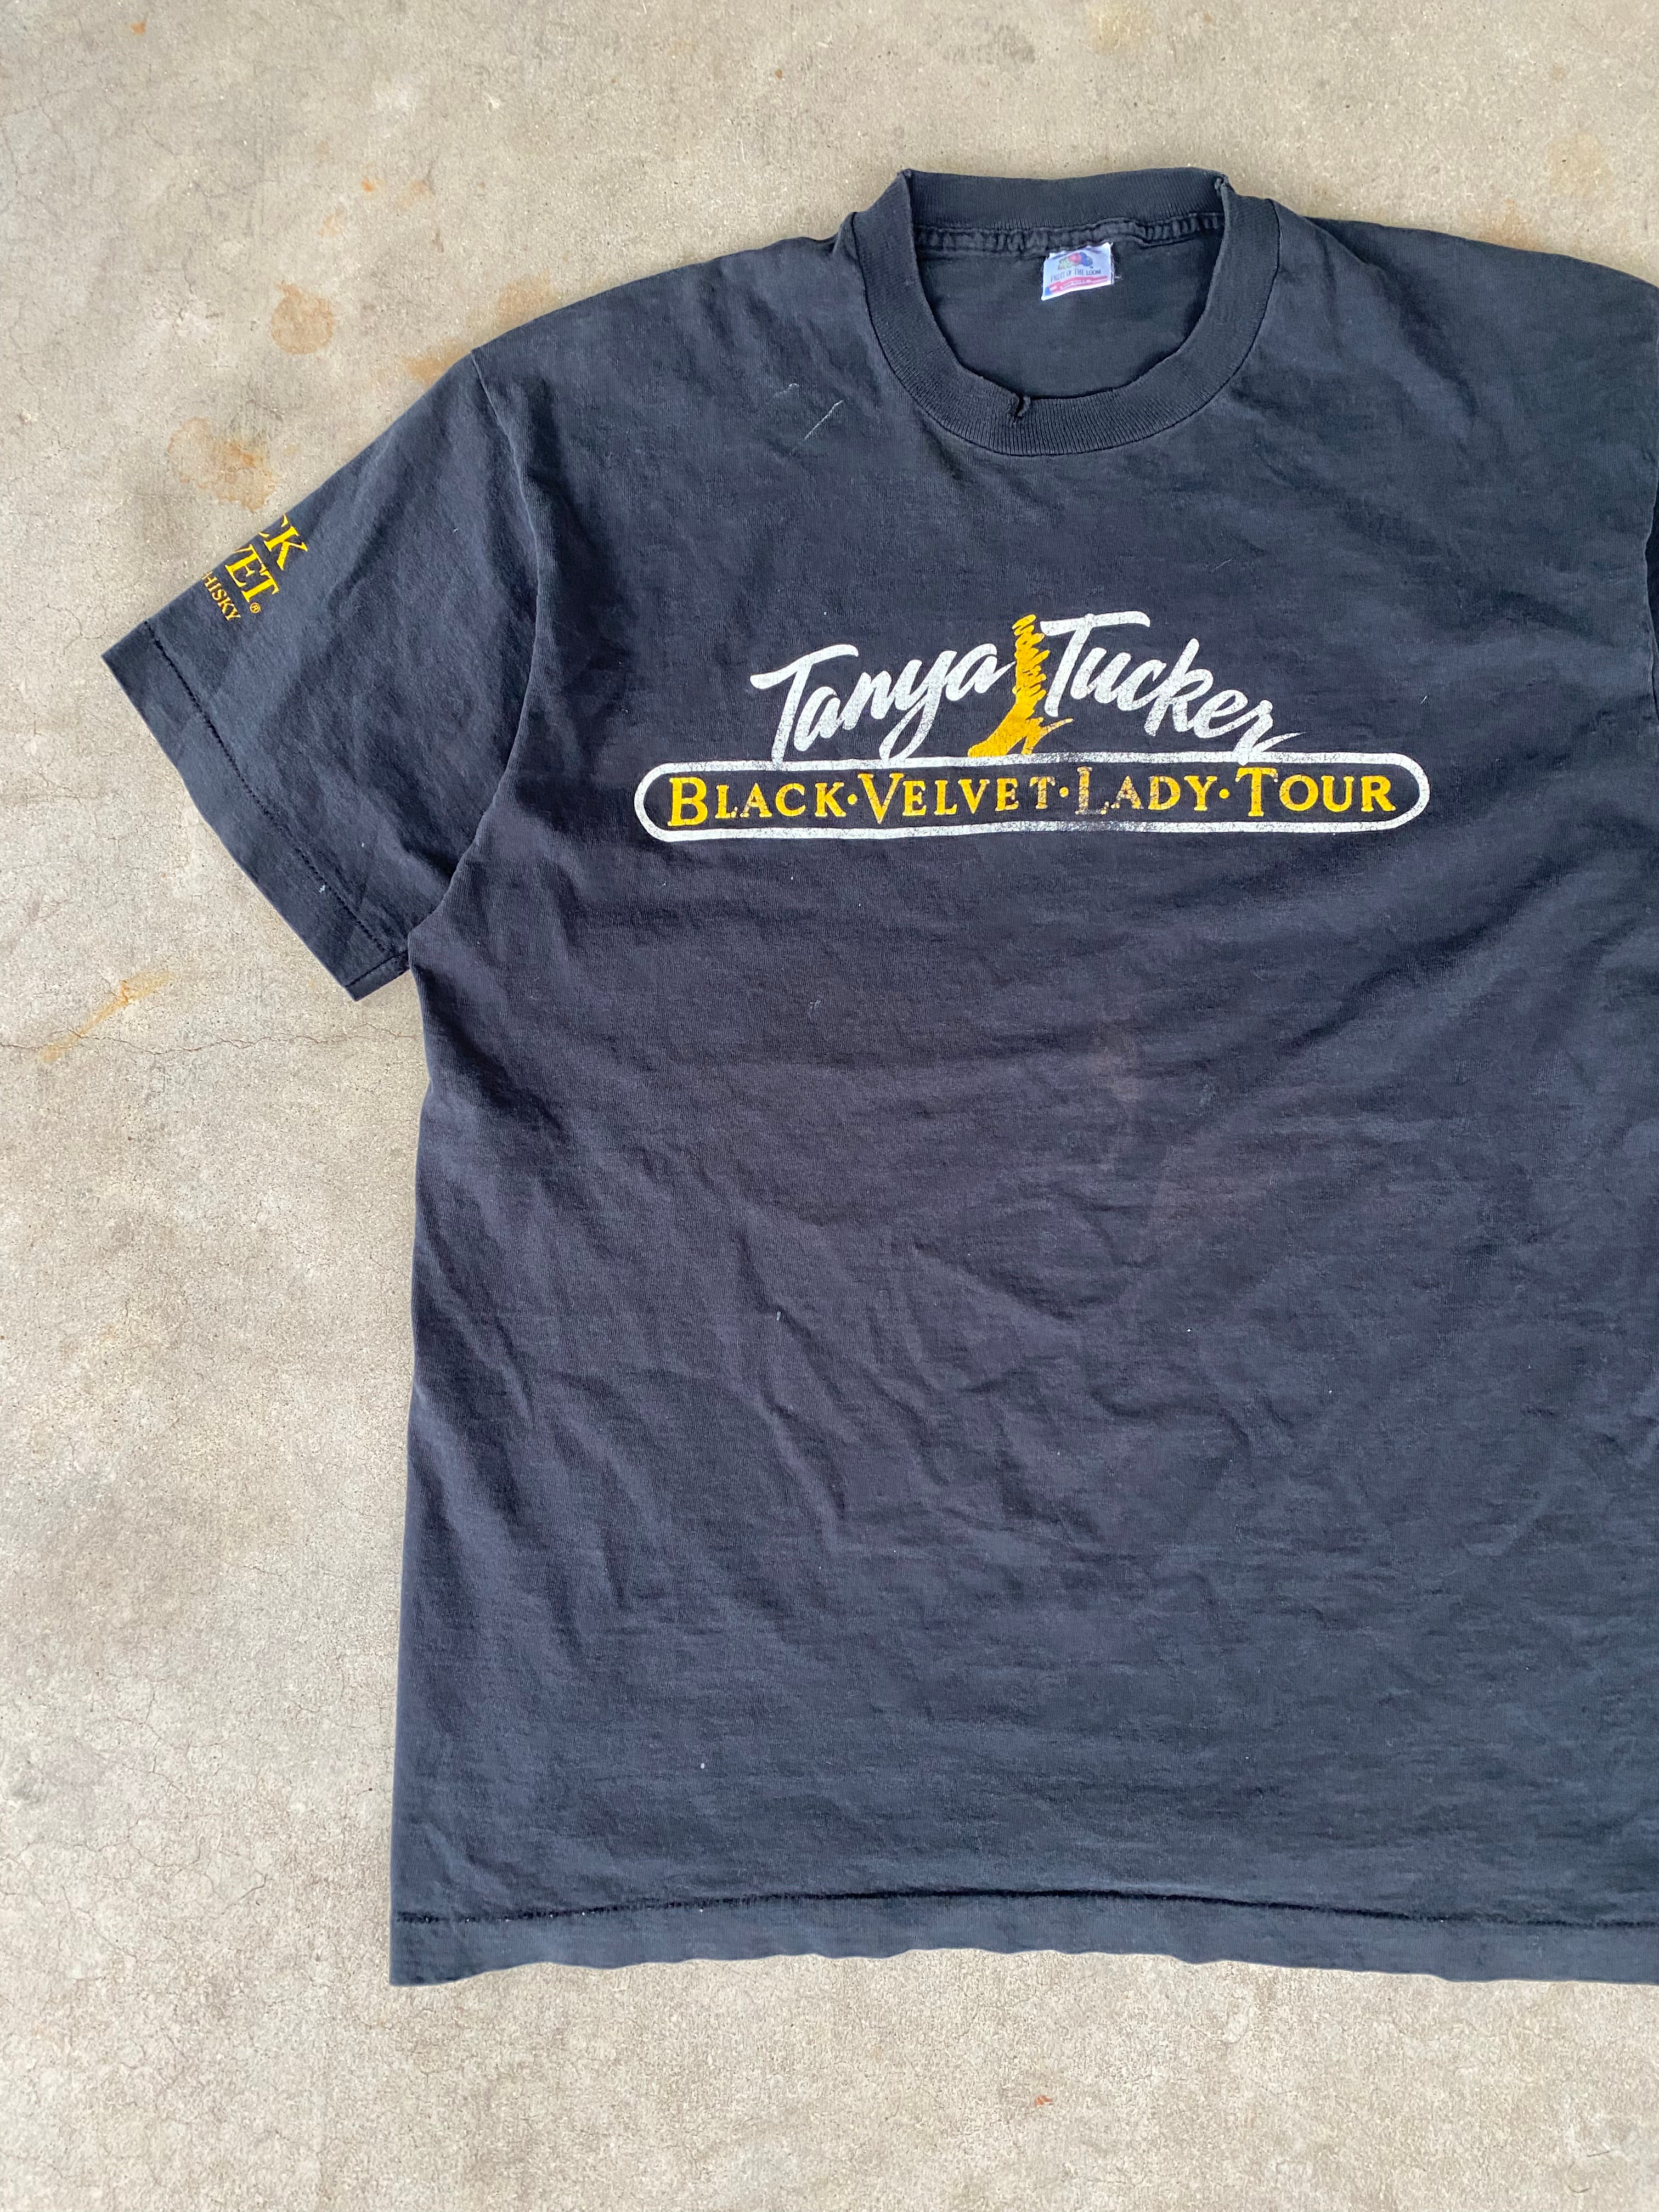 1990s Tanya Tucker Black Velvet Lady Tour T-Shirt (XL)